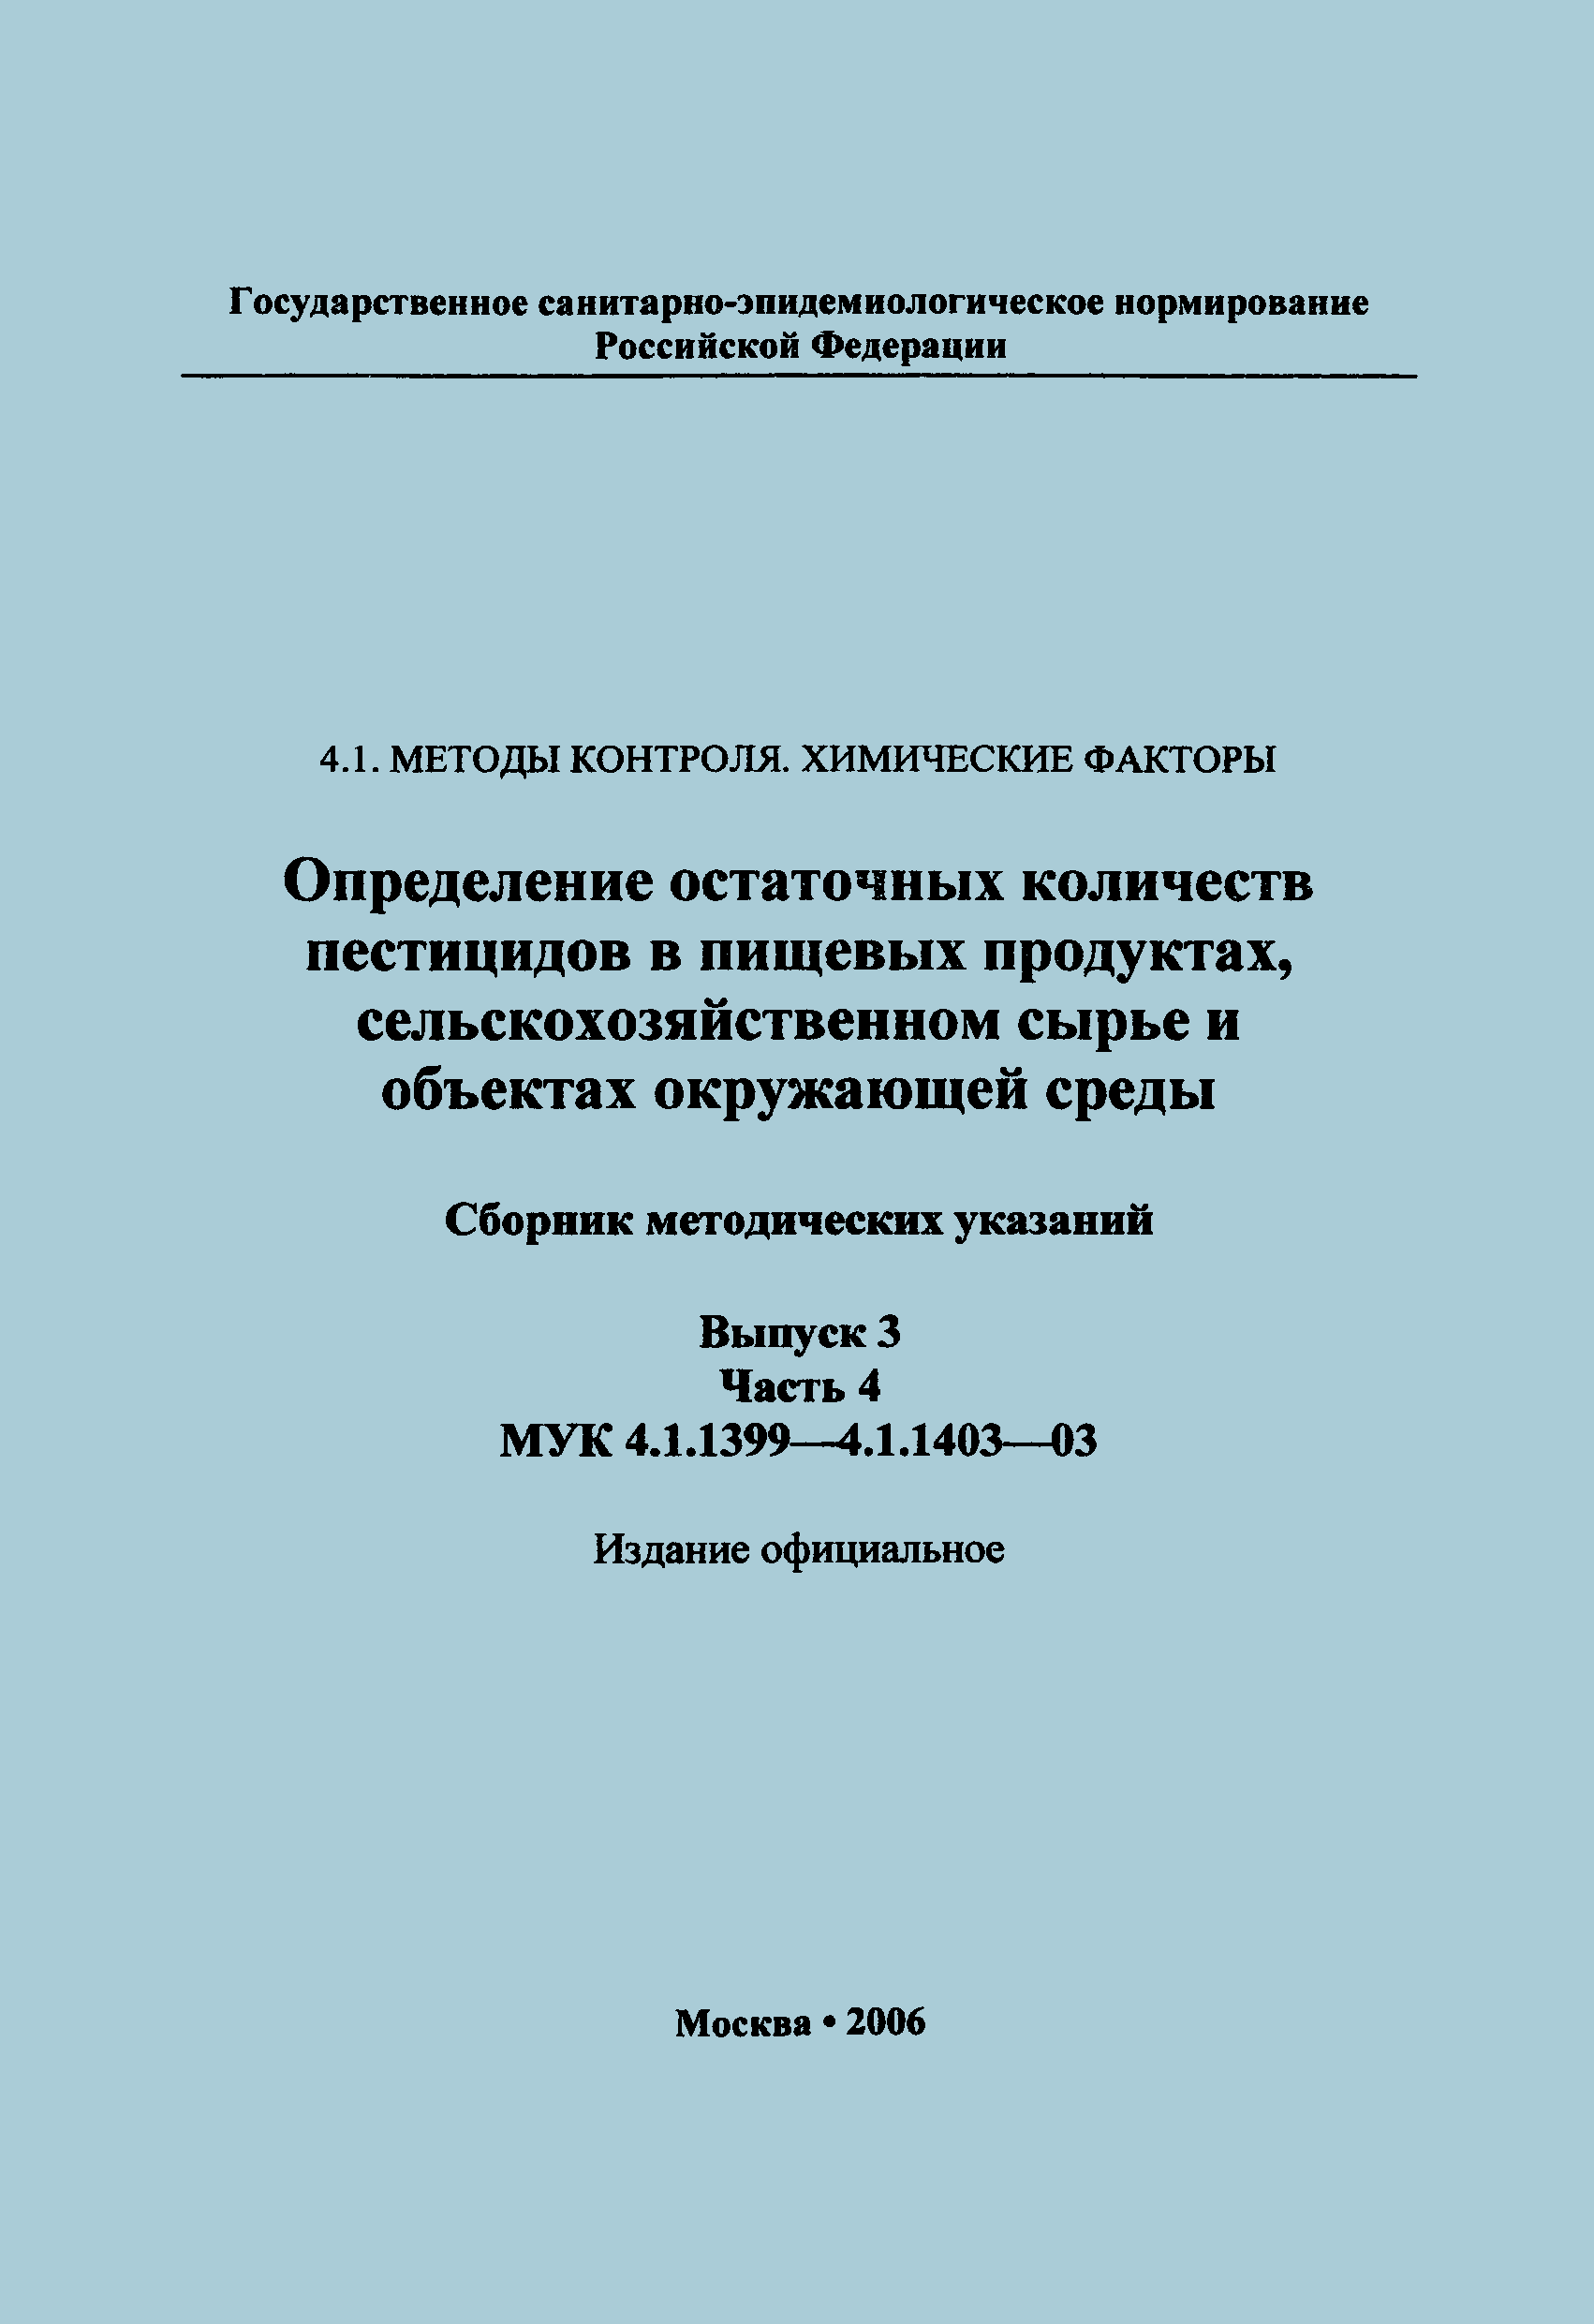 МУК 4.1.1399-03